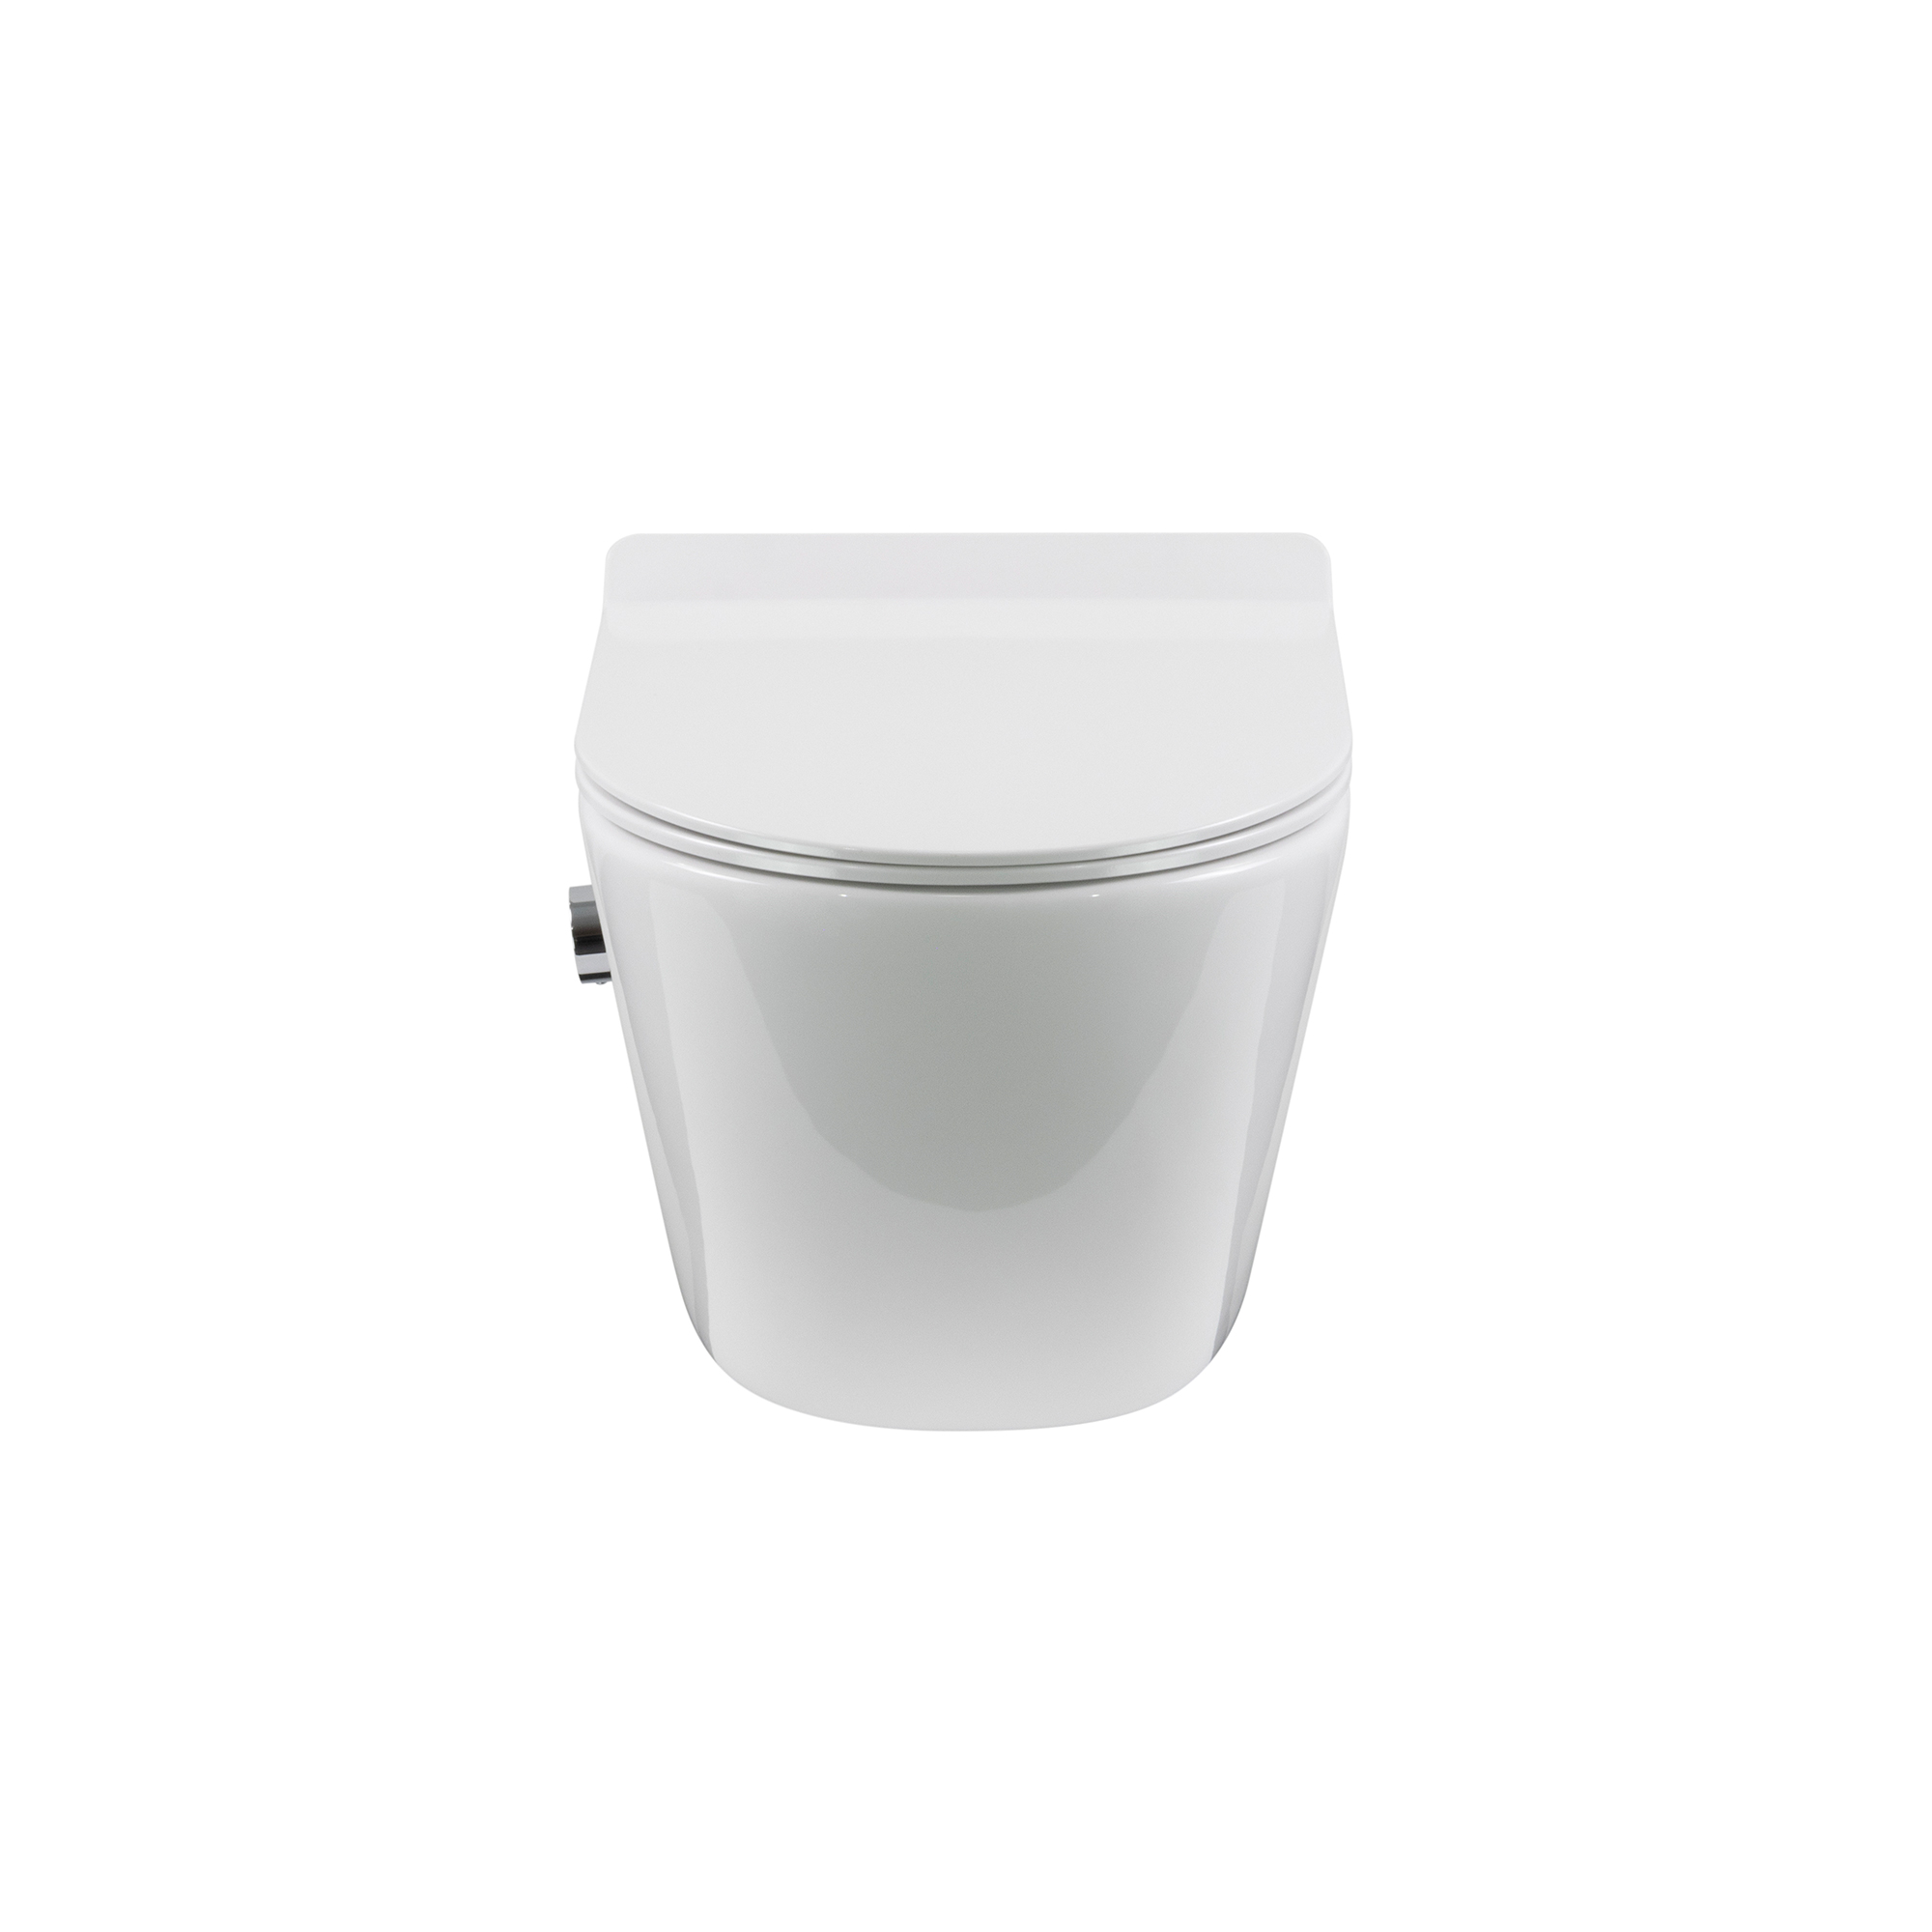 Dusch-WC Franco Fresh mit Bidetfunktion, spülrandloses Wand-WC in Weiß